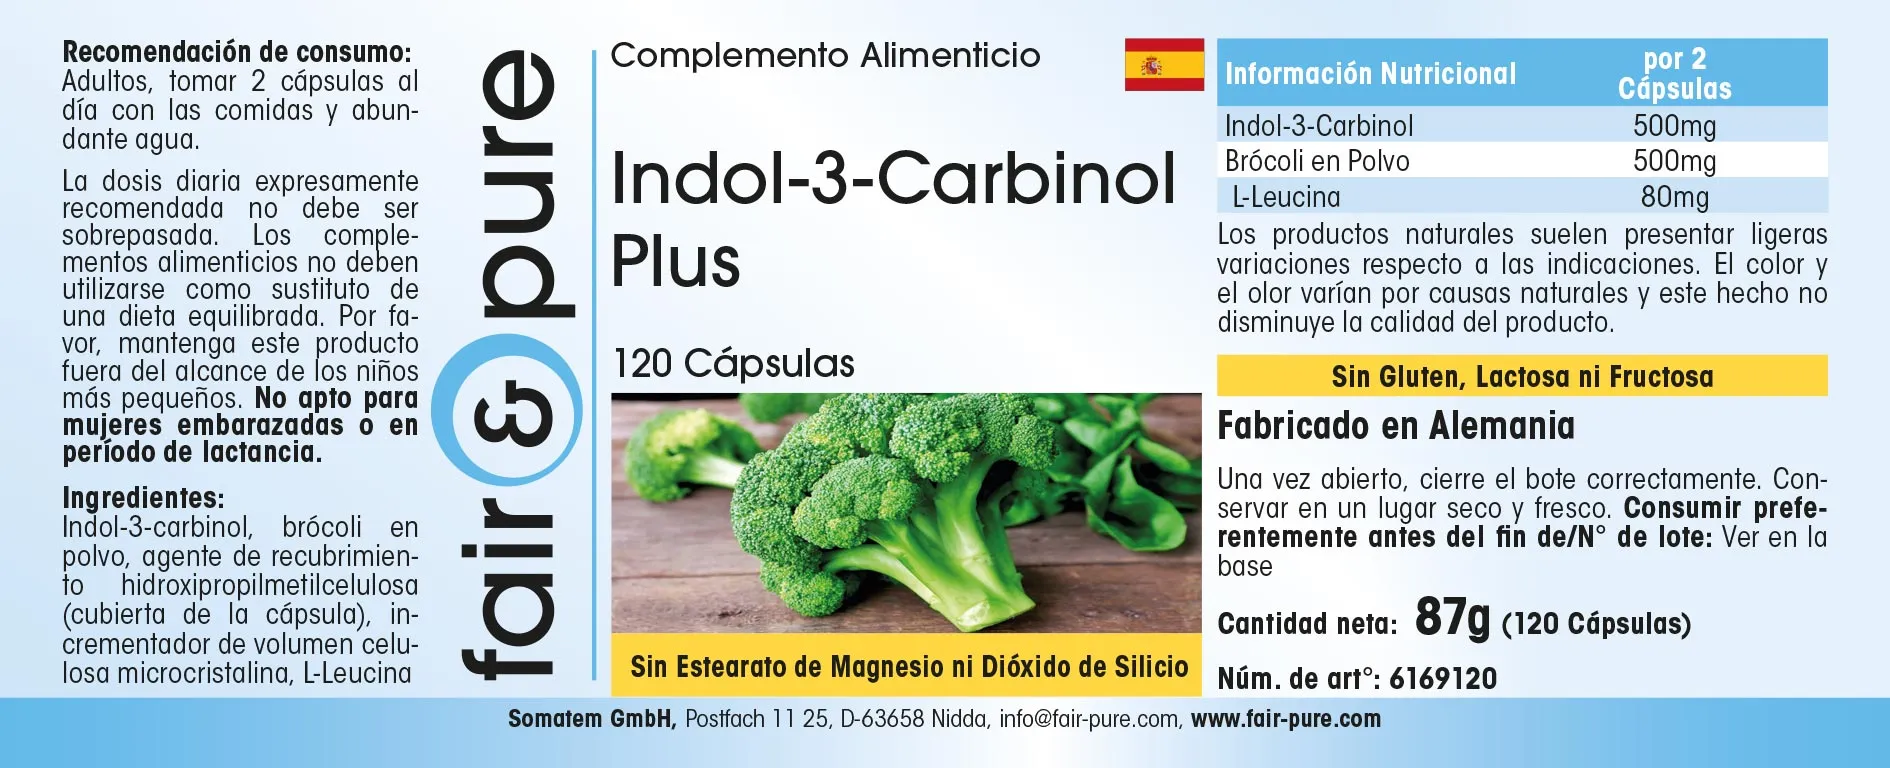 Indole-3-Carbinol Plus